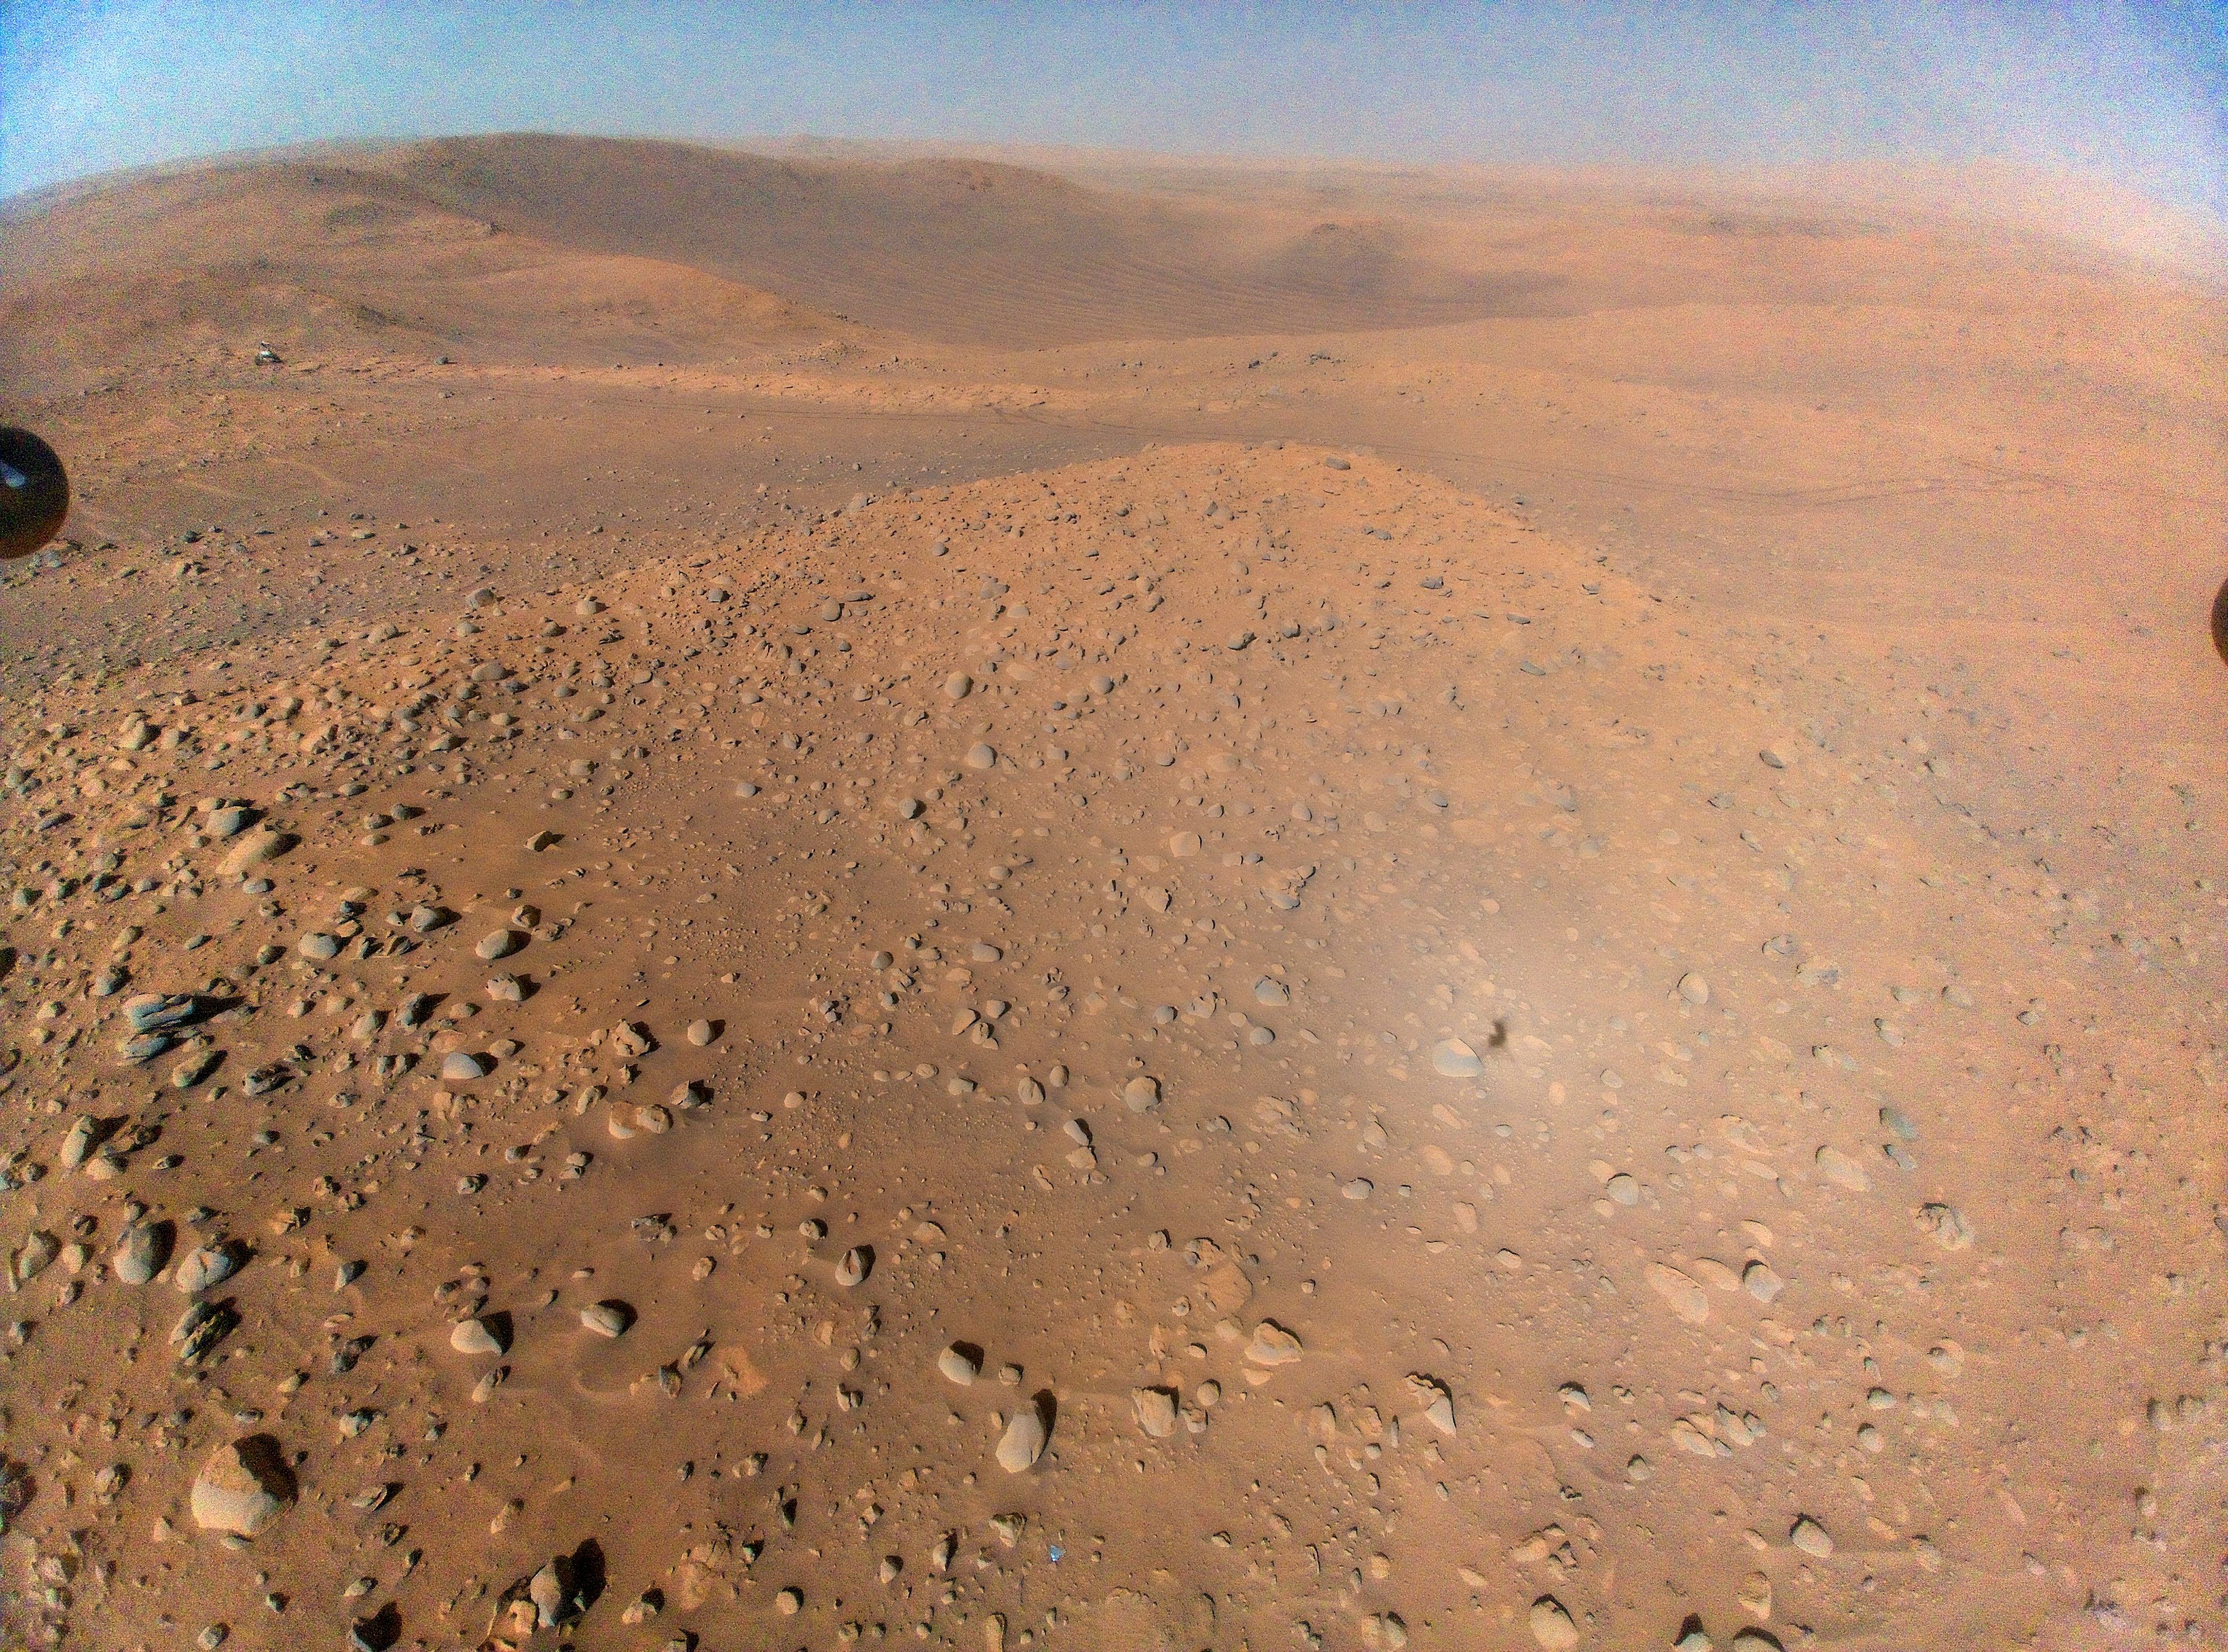 Uma imagem de Marte tirada do ar pelo helicóptero da Ingenuity, com o rover Perseverance visível no canto superior esquerdo.